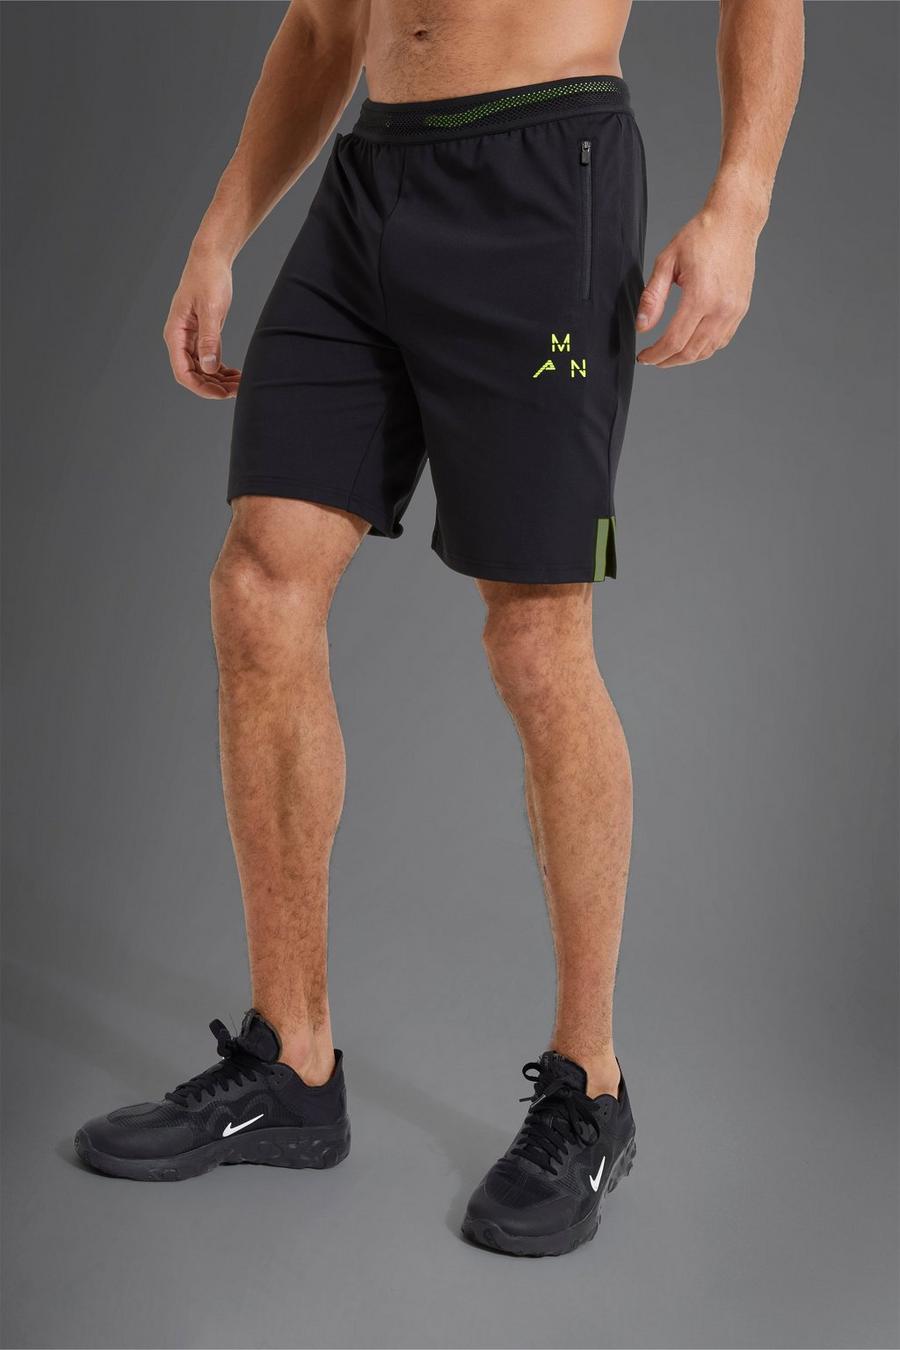 Pantaloncini Man Active Gym con dettagli in colori fluo, Black negro